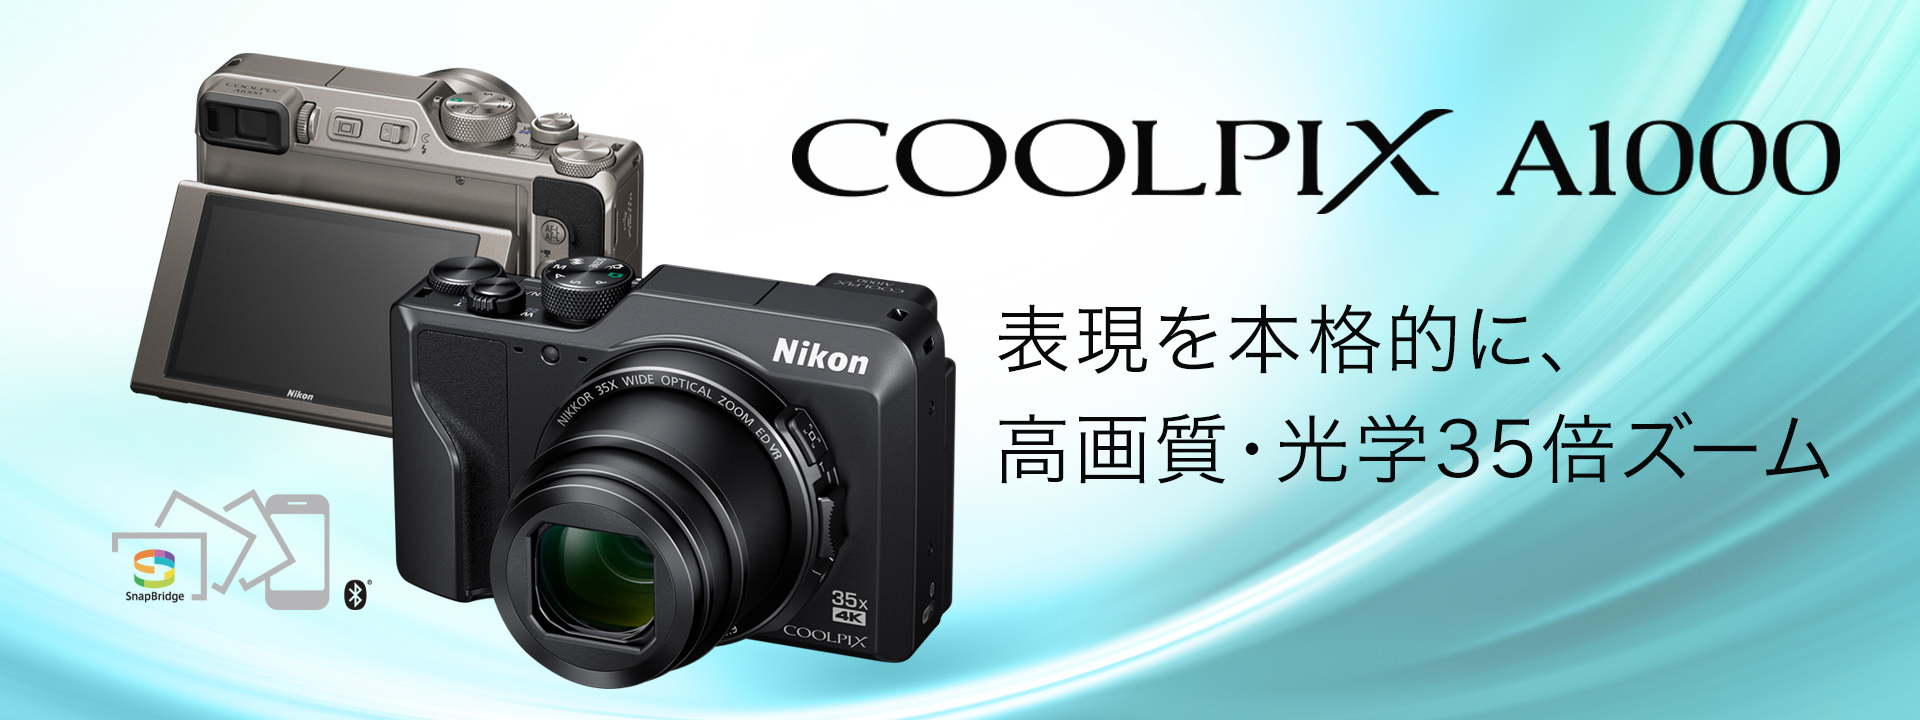 【新品3台セット】デジカメ NIKON COOLPIX A1000